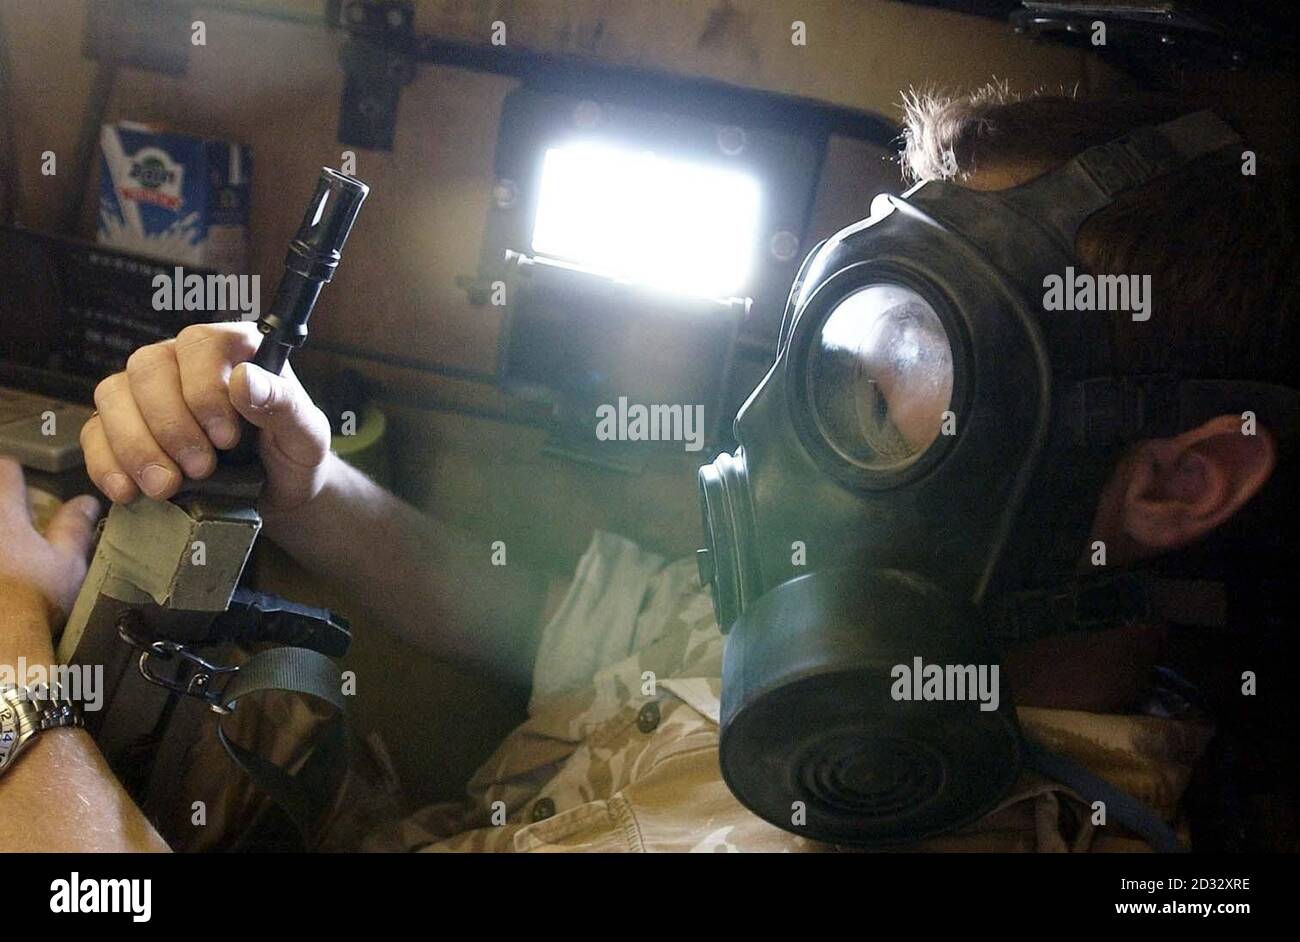 Ein britischer Truppenführer trägt eine Atemschutzmaske, während er während eines vermuteten Gasangriffs auf Koalitionstruppen in der Nähe der irakischen Grenze in einem spartanischen Truppentransporter der 16. Luftangriffsbrigade sitzt. Stockfoto